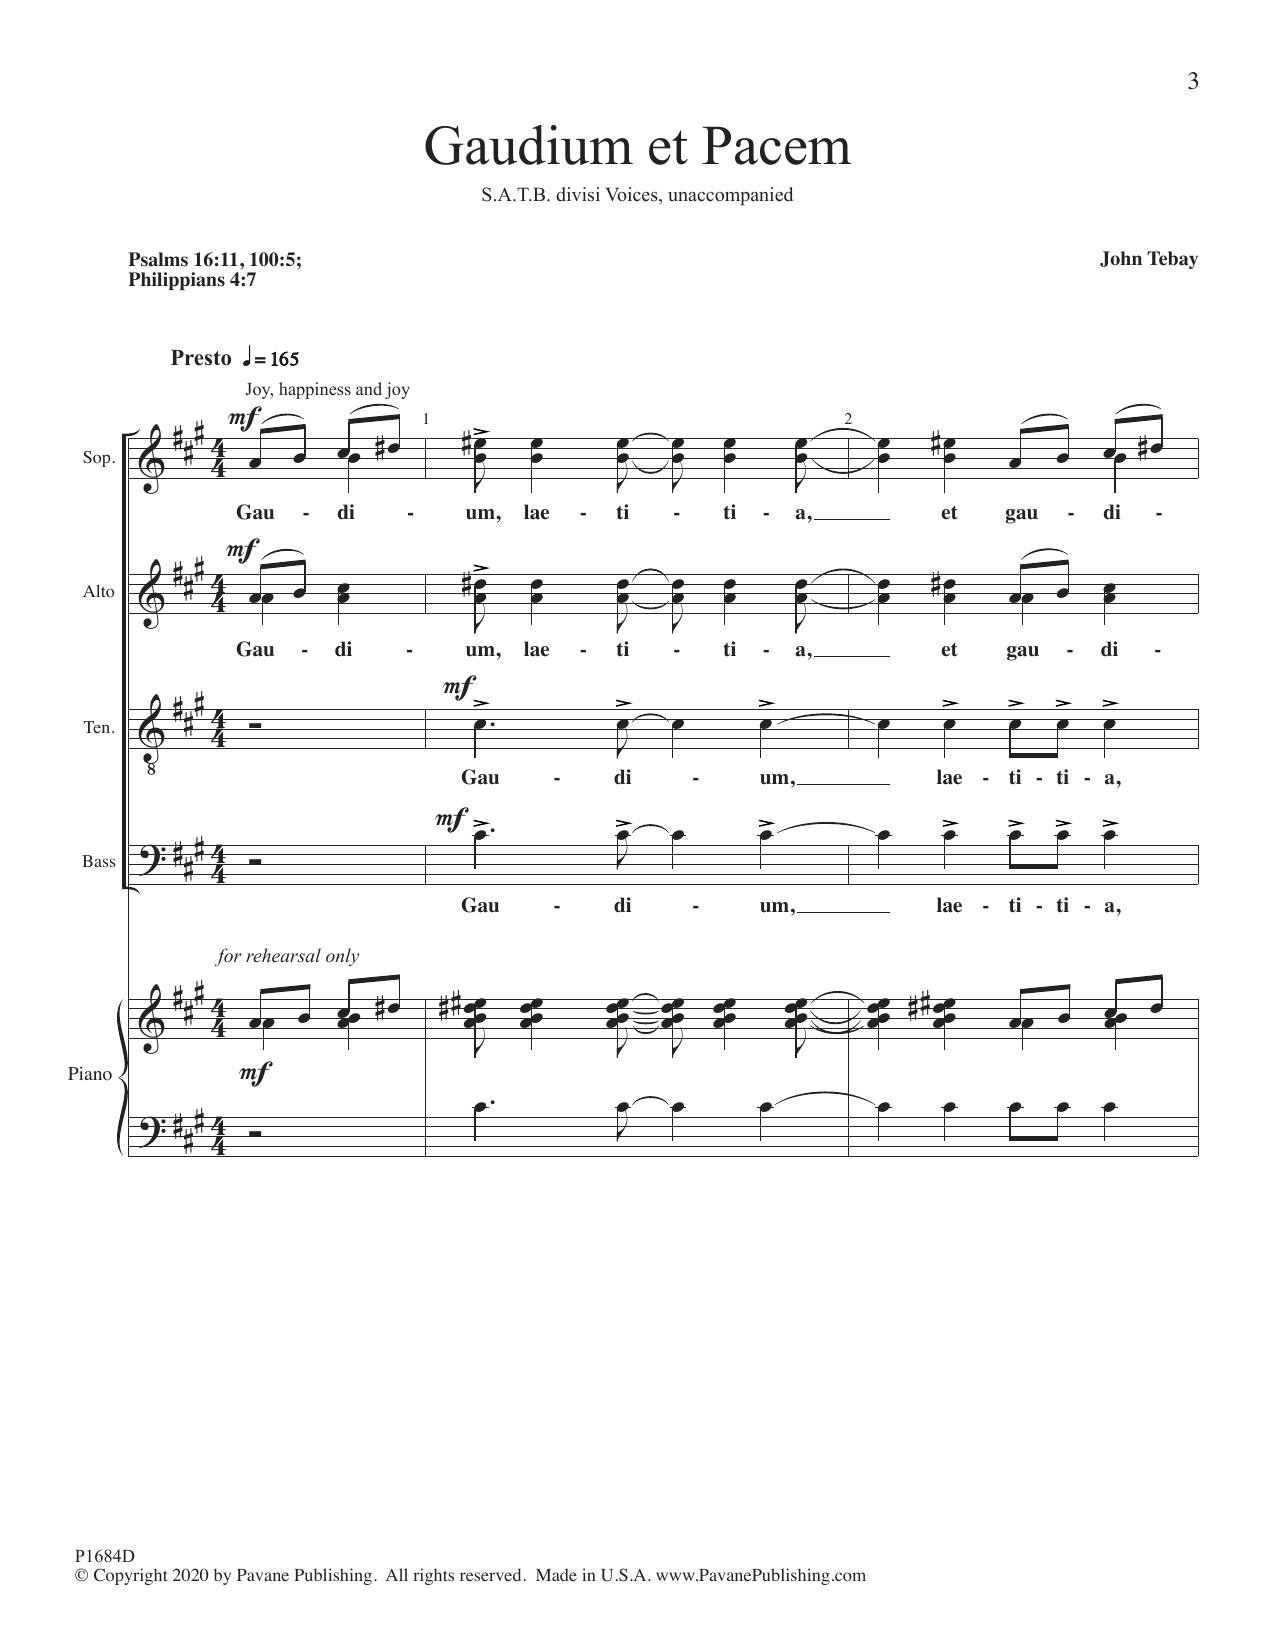 John Tebay Gaudium Et Pacem Sheet Music Notes & Chords for SATB Choir - Download or Print PDF